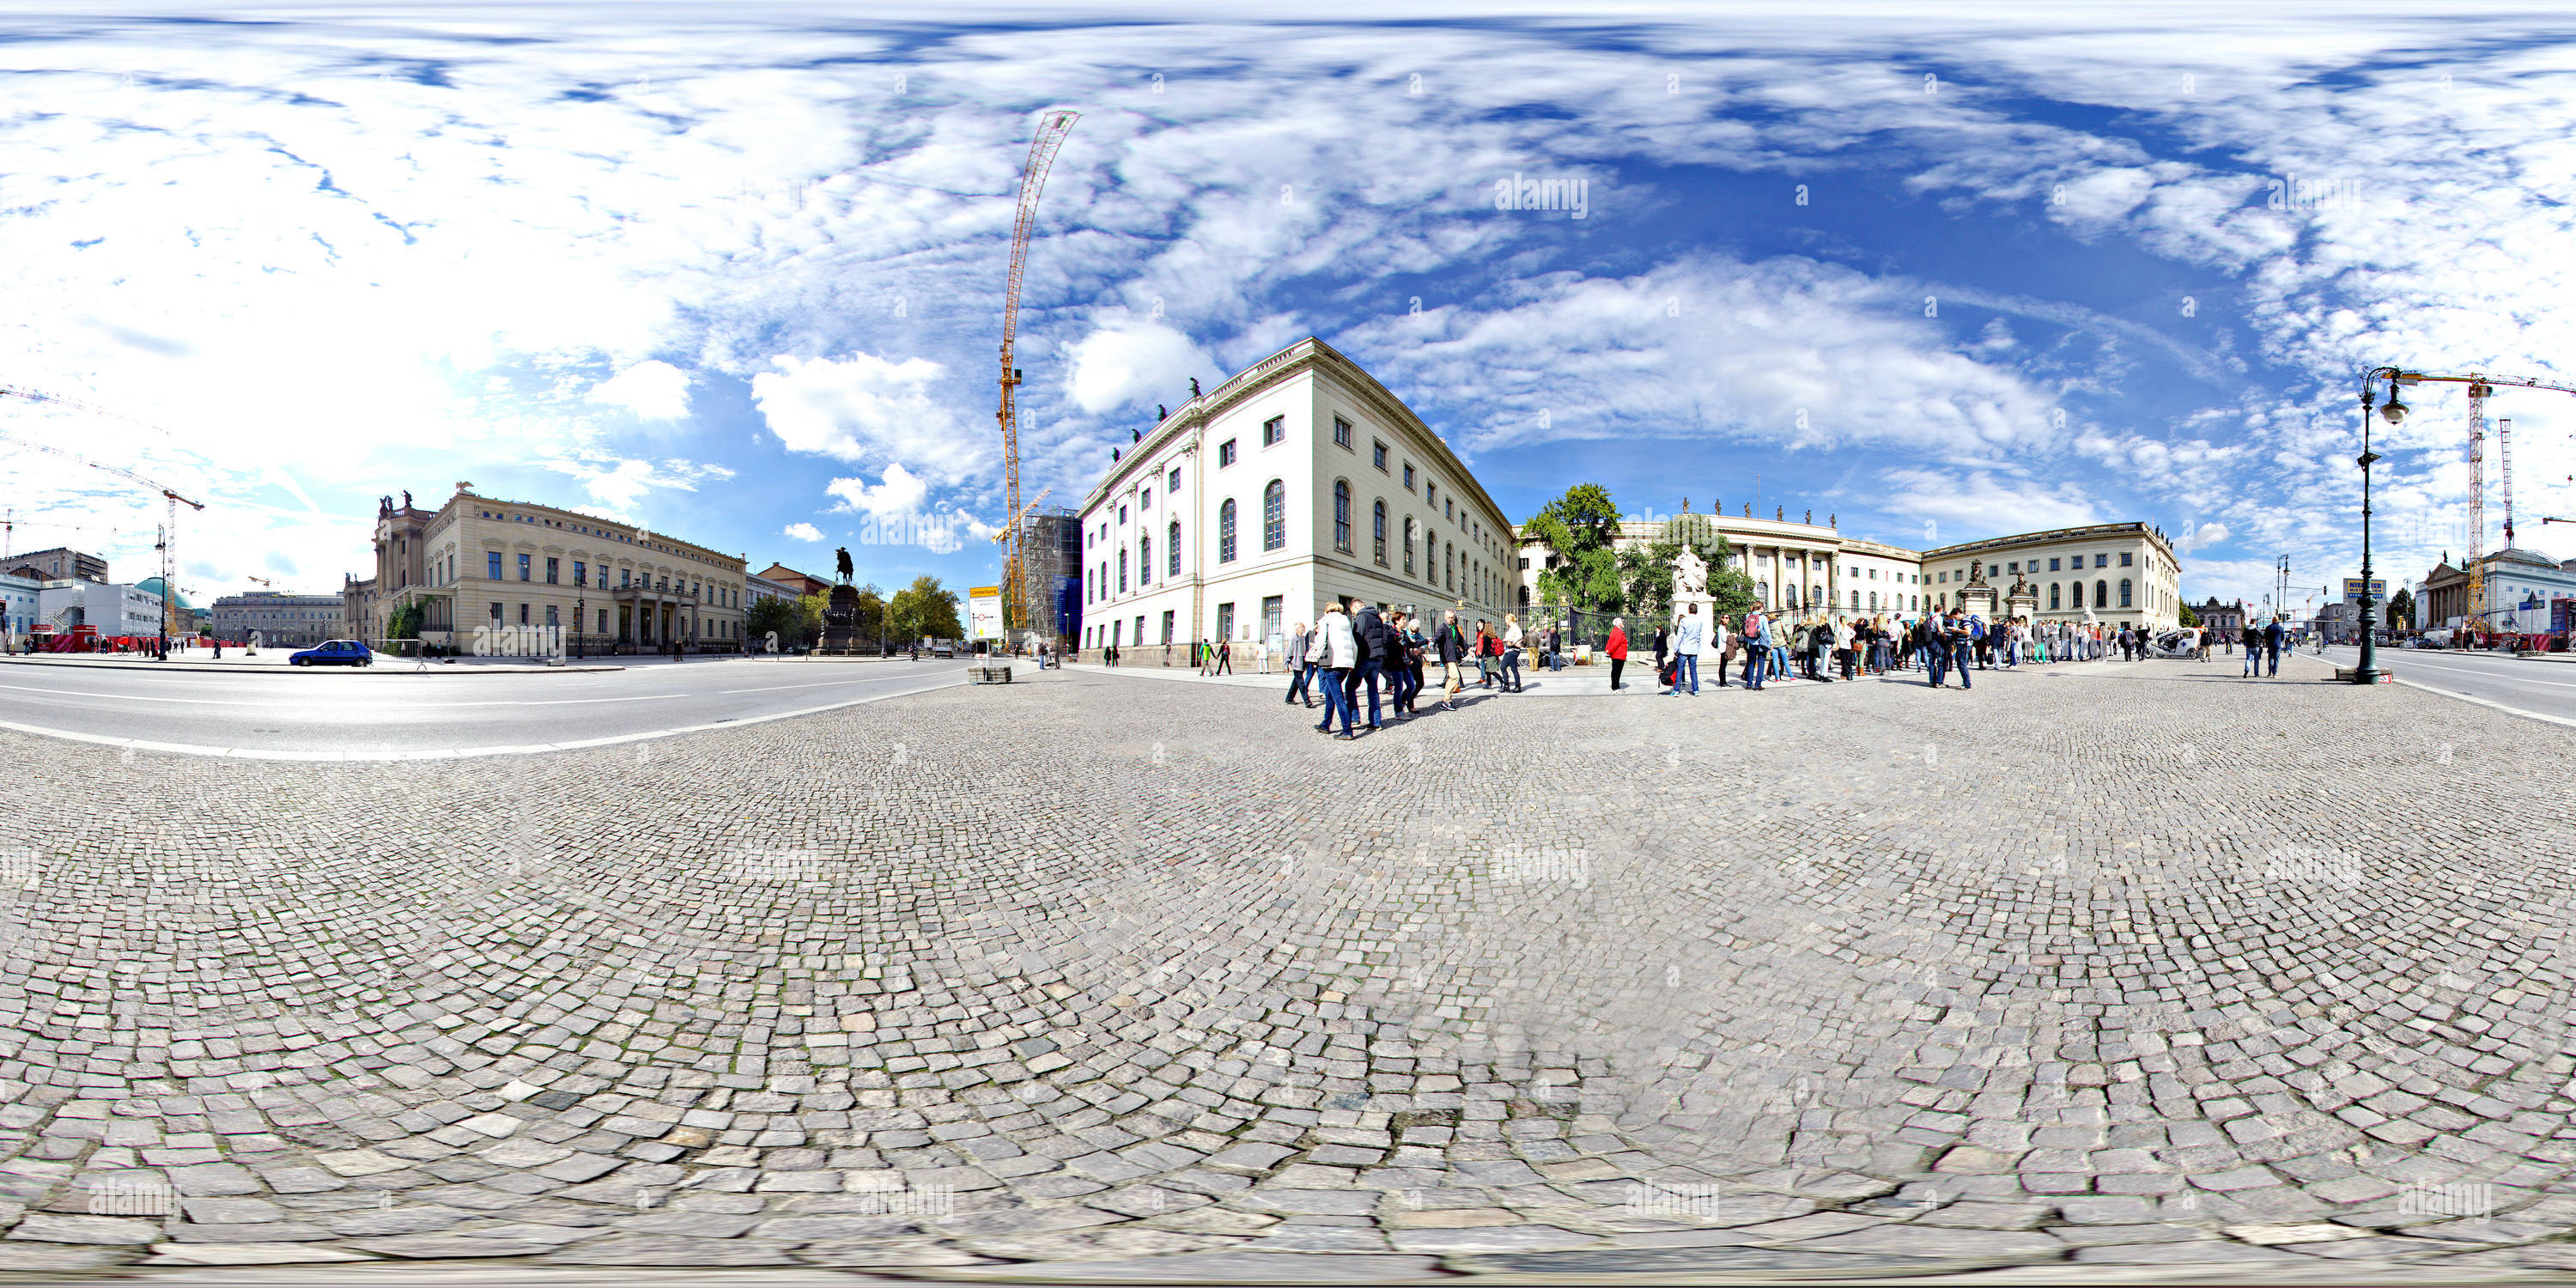 360 Grad Panorama Ansicht von Humboldt-Universität zu Berlin